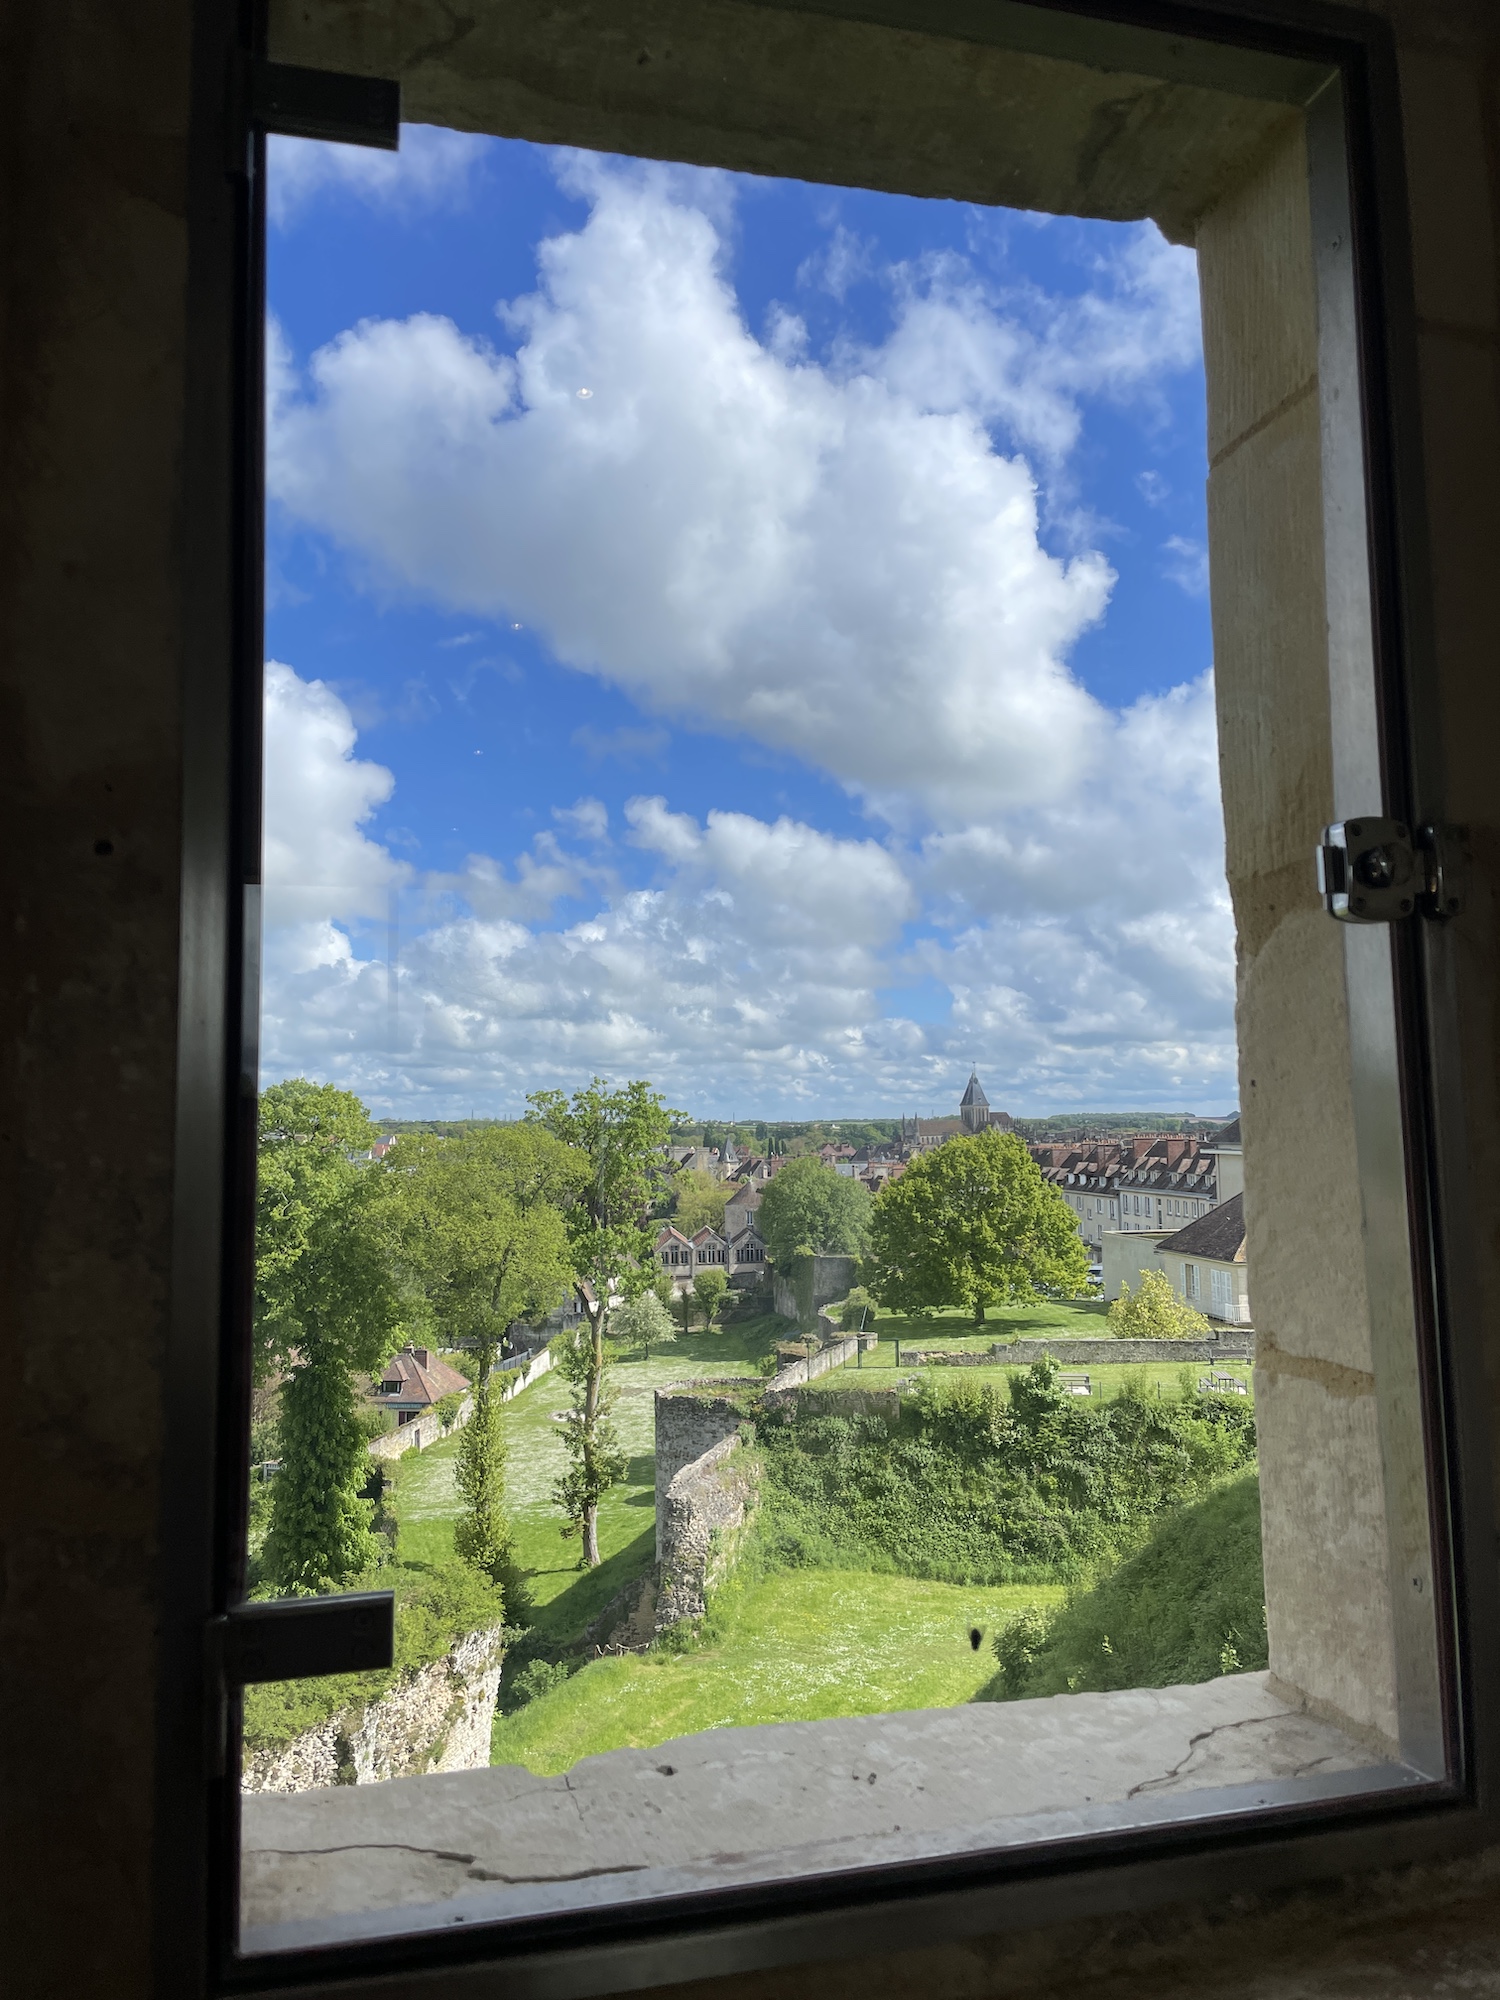 Chateau la Falaise - kasteel Willem de Veroveraar in Calvados